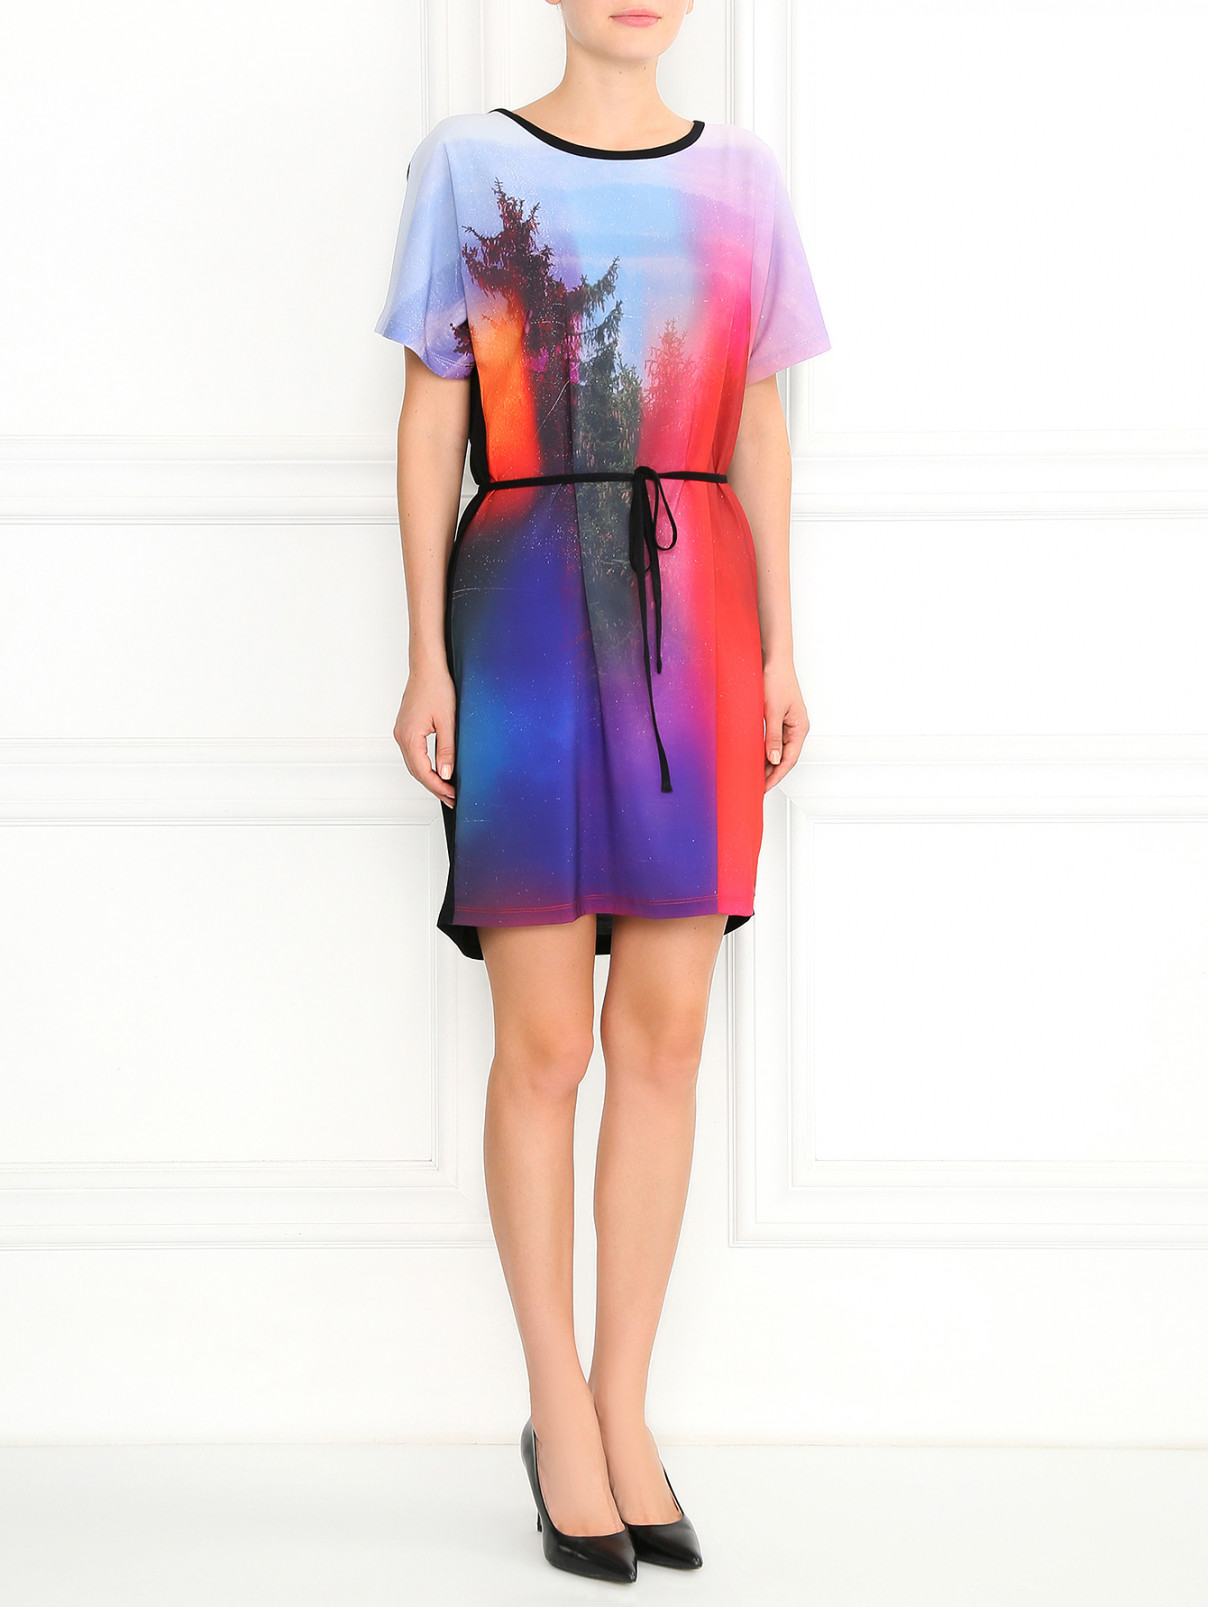 Трикотажное платье с узором и поясом Paul Smith  –  Модель Общий вид  – Цвет:  Узор